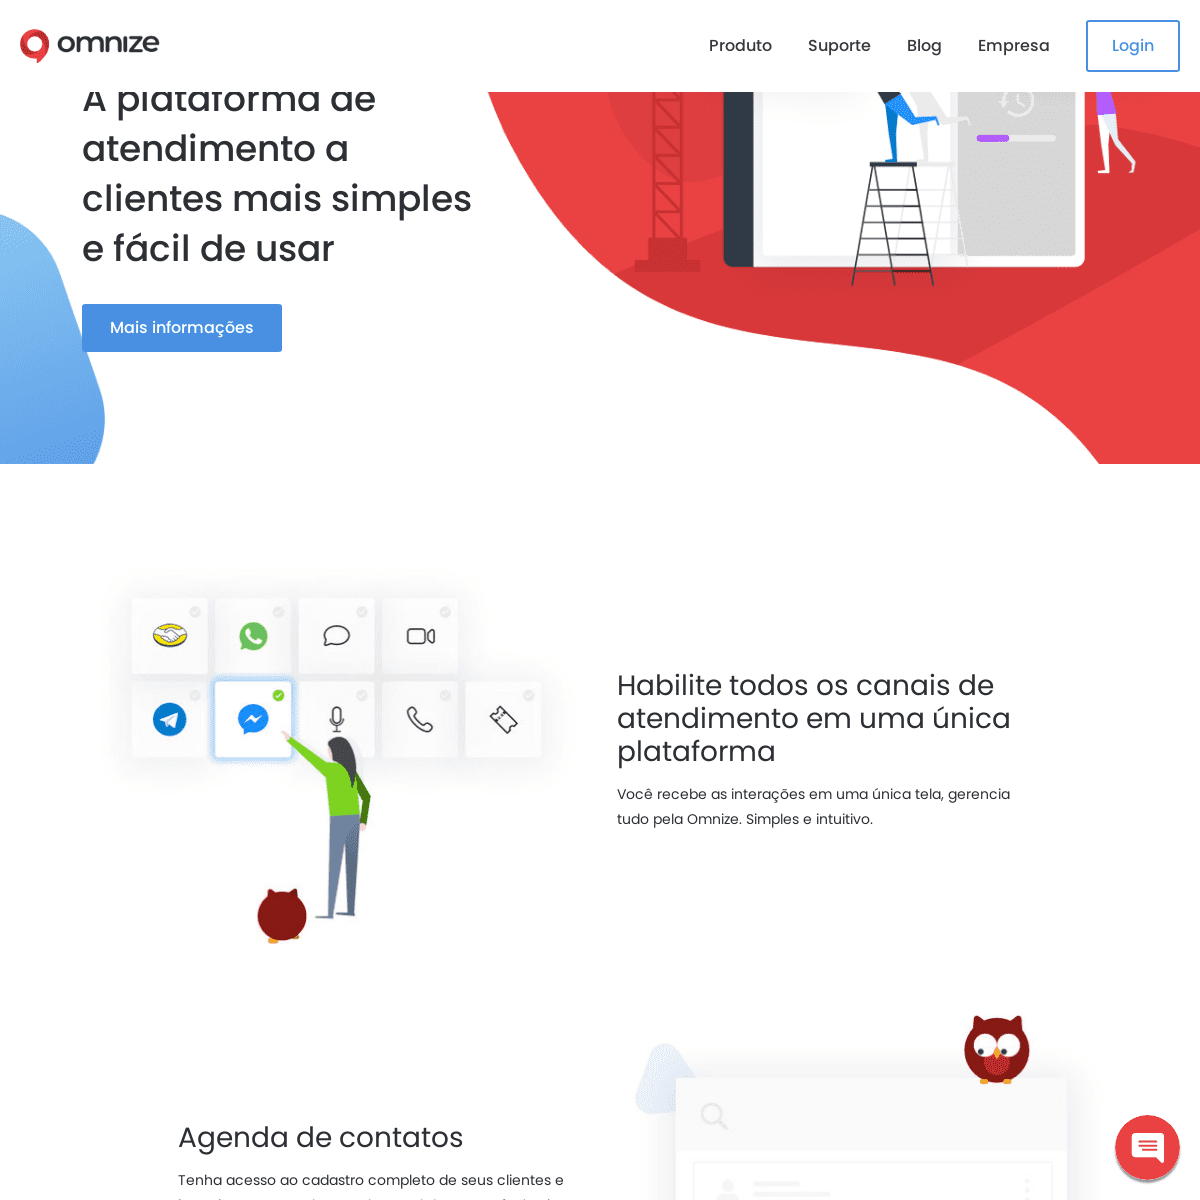 Omnize | A plataforma de atendimento a clientes mais simples e fácil de usar 